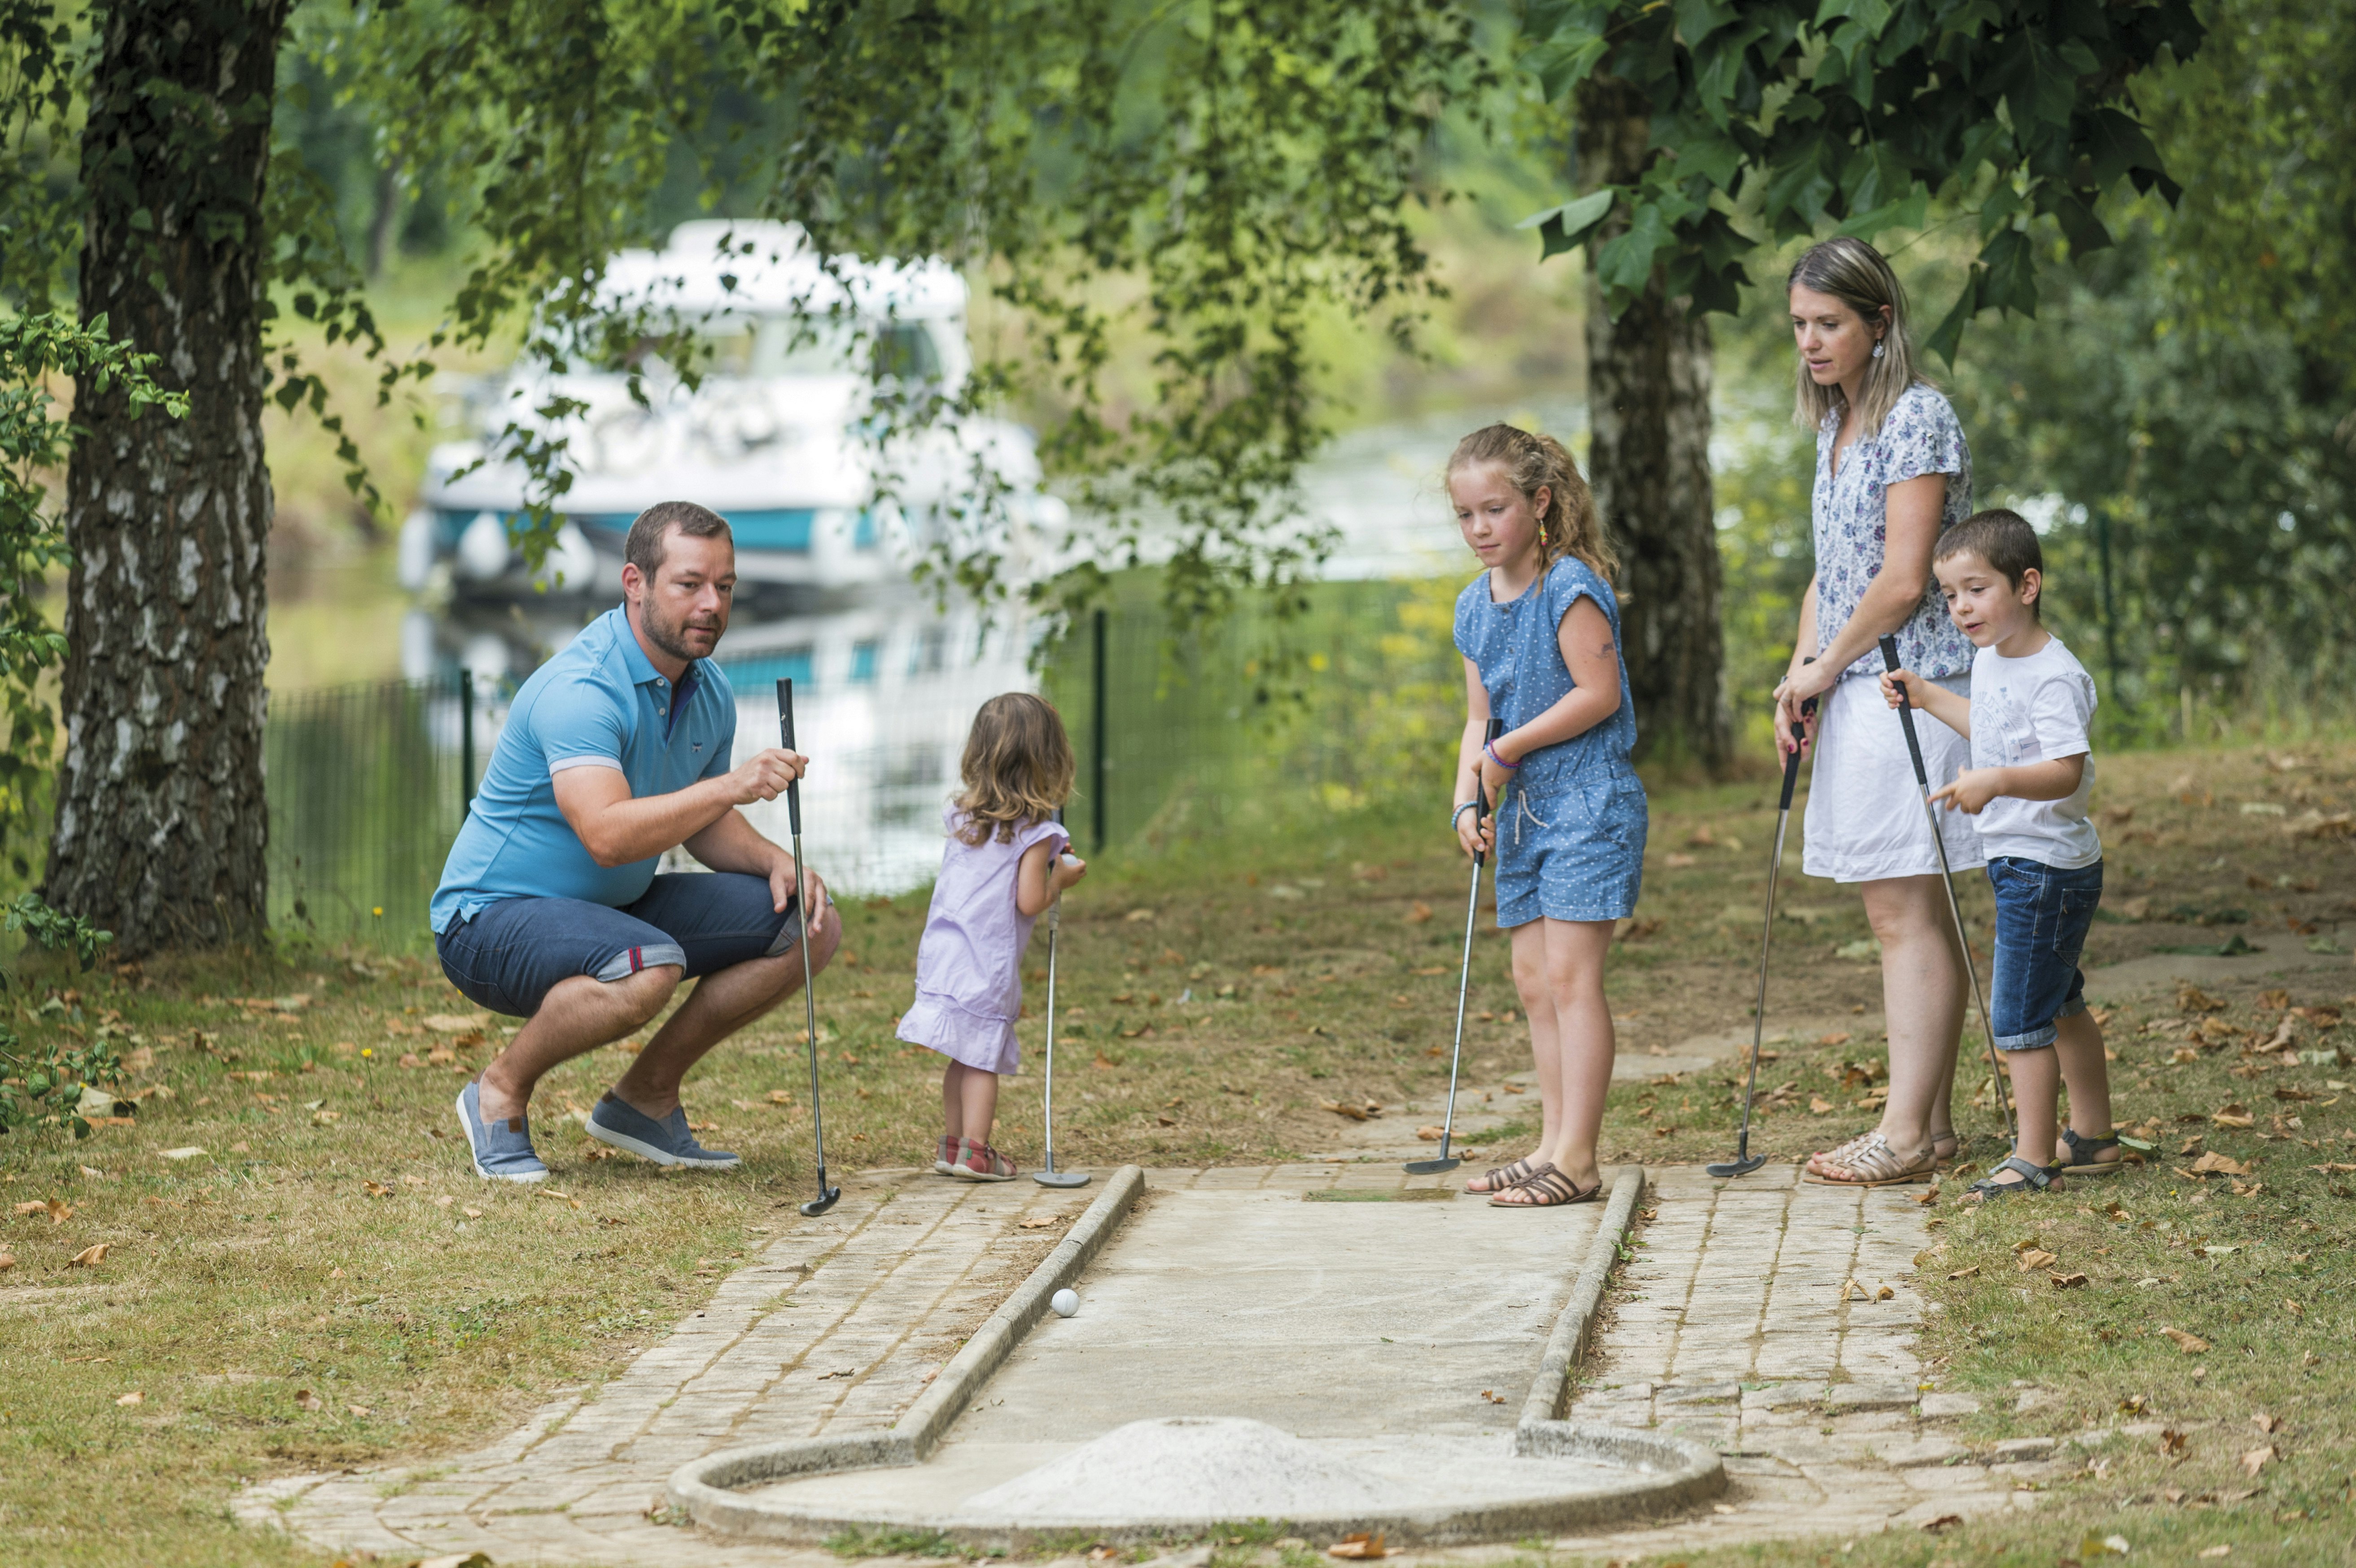 Rodina hrajúca minigolf s vodným kanálom a hausbótom v pozadí